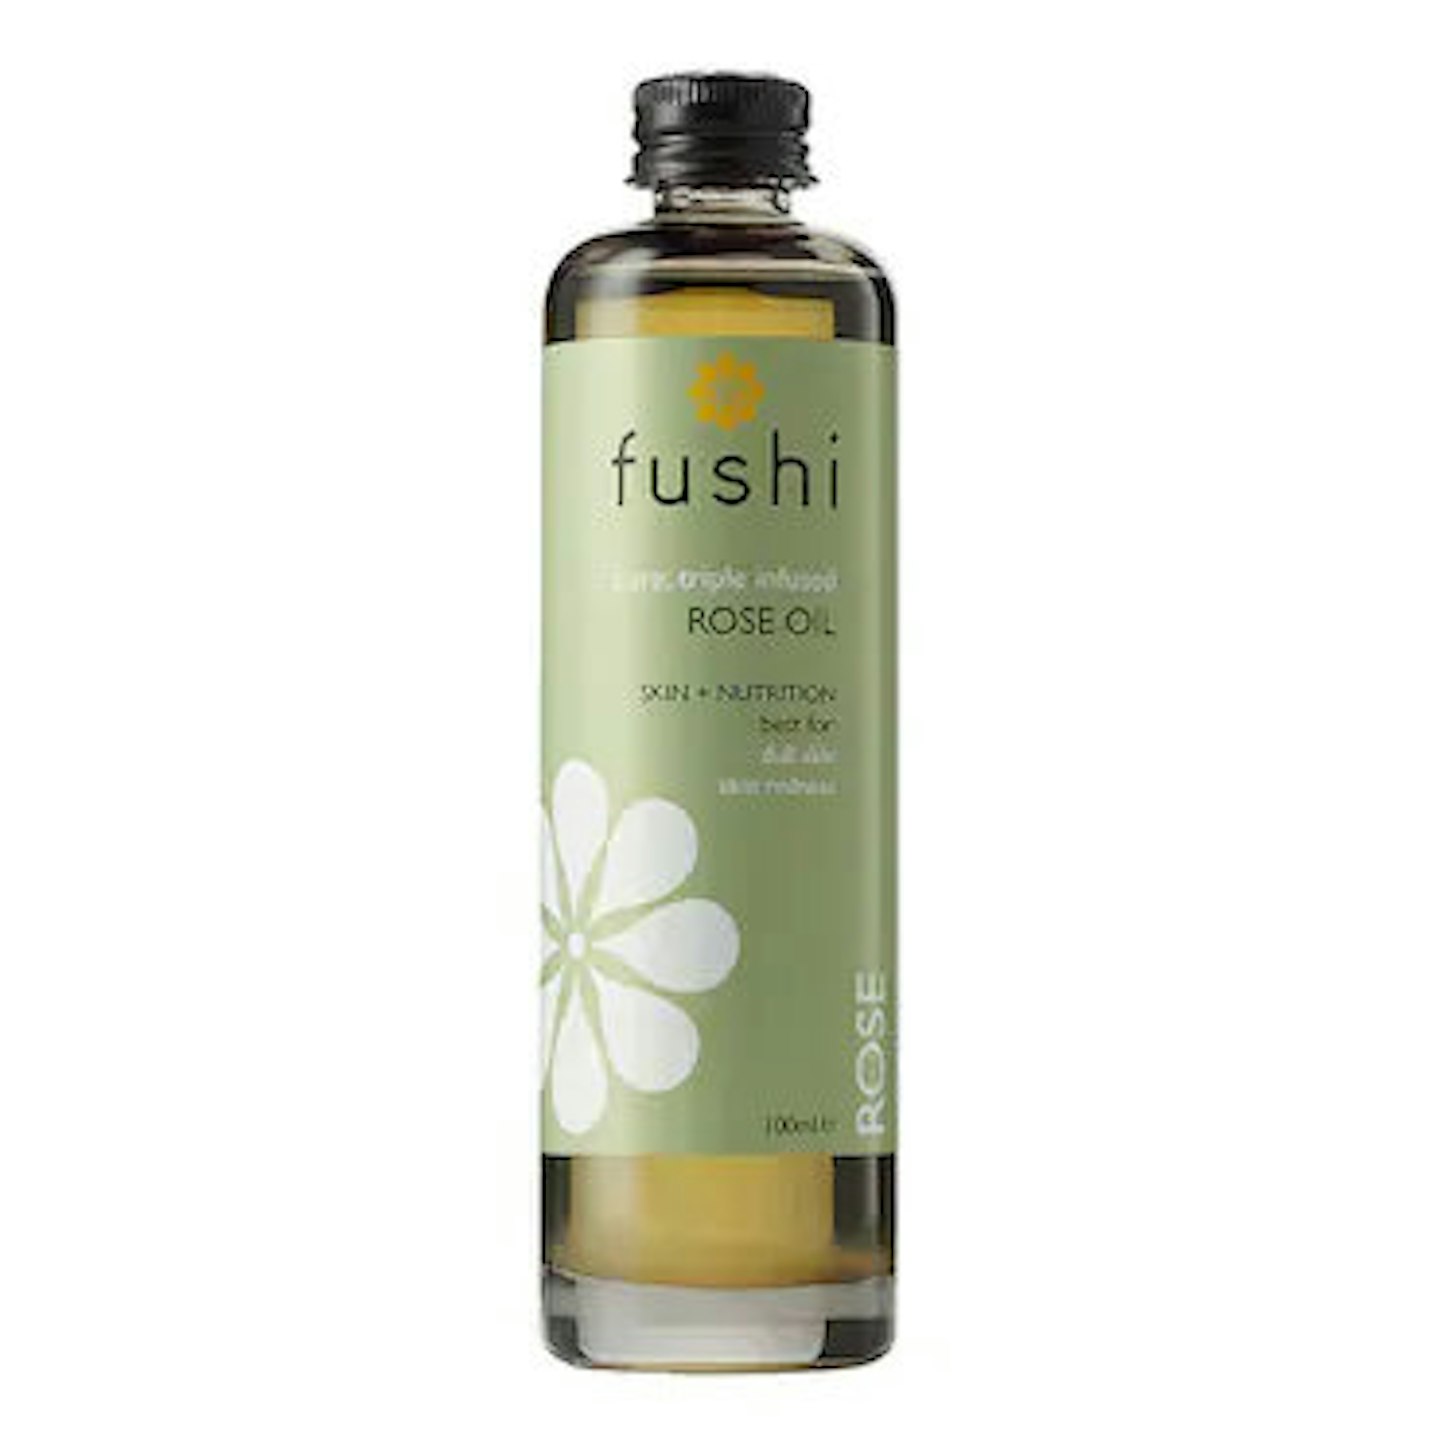 Fushi Pure Triple infused Rose Oil